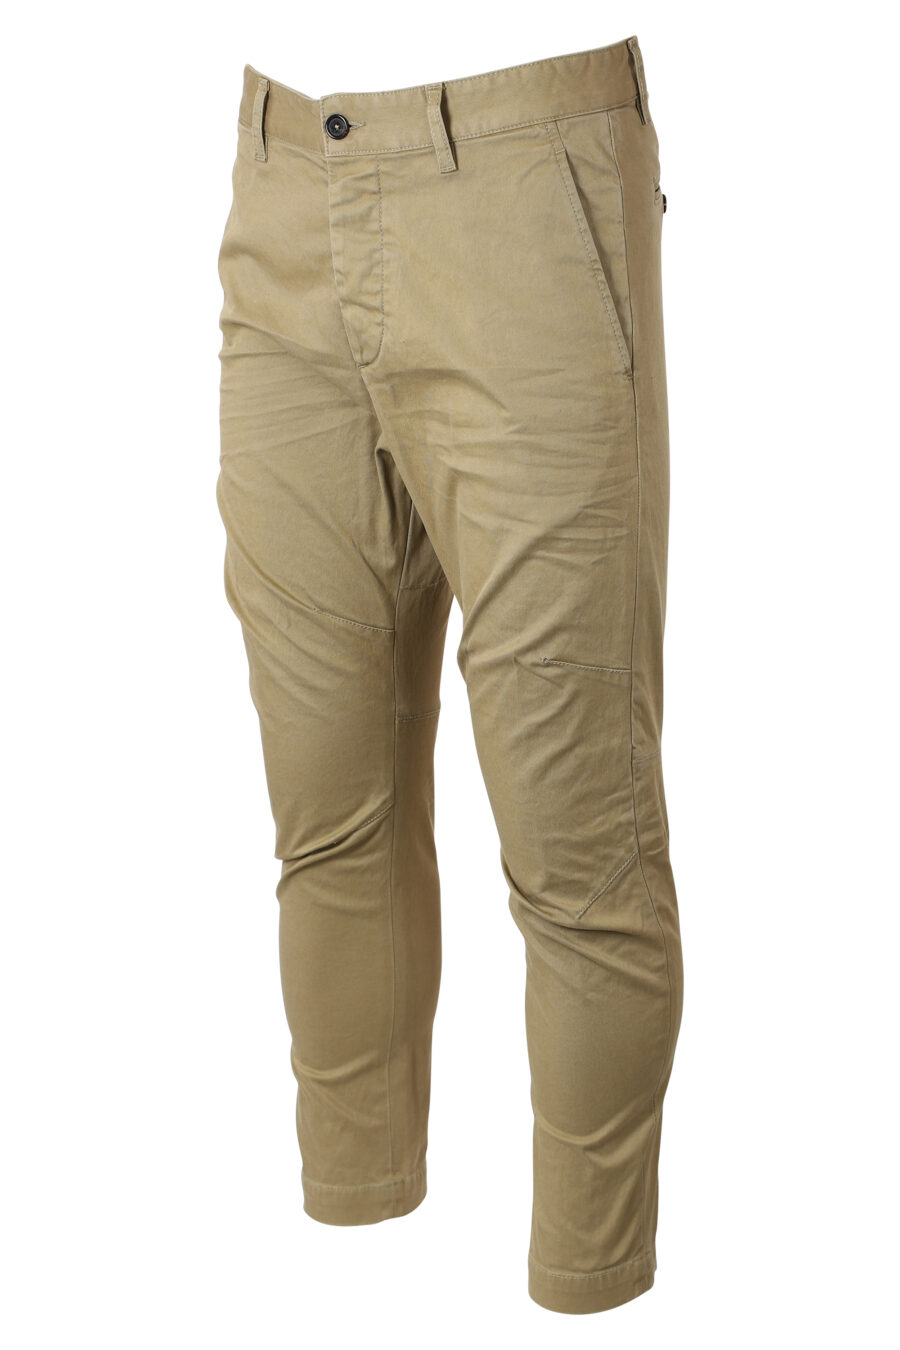 Pantalon beige "sexy chino" - IMG 9948